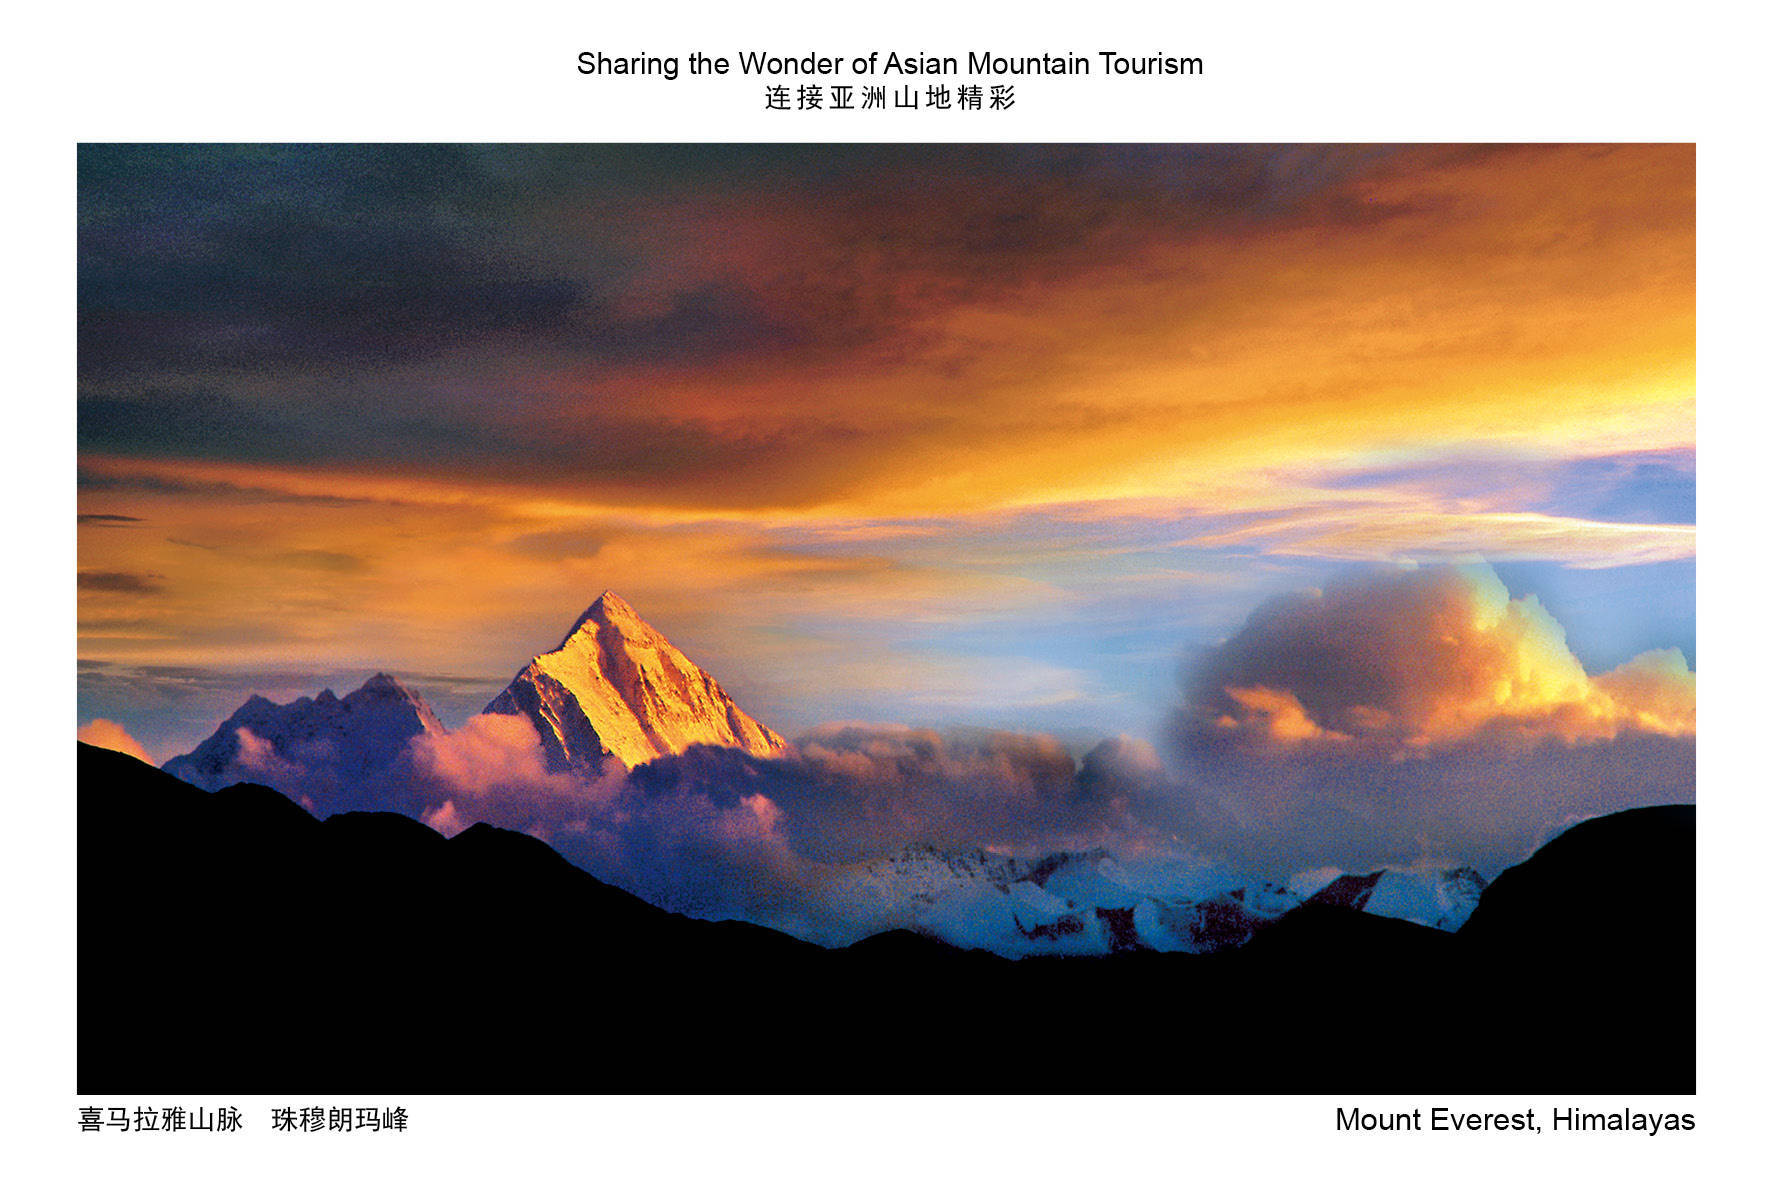 2022亚洲山地旅游推广大会 | 看亚洲山地旅游摄影展，赏壮美自然风光与山地美景